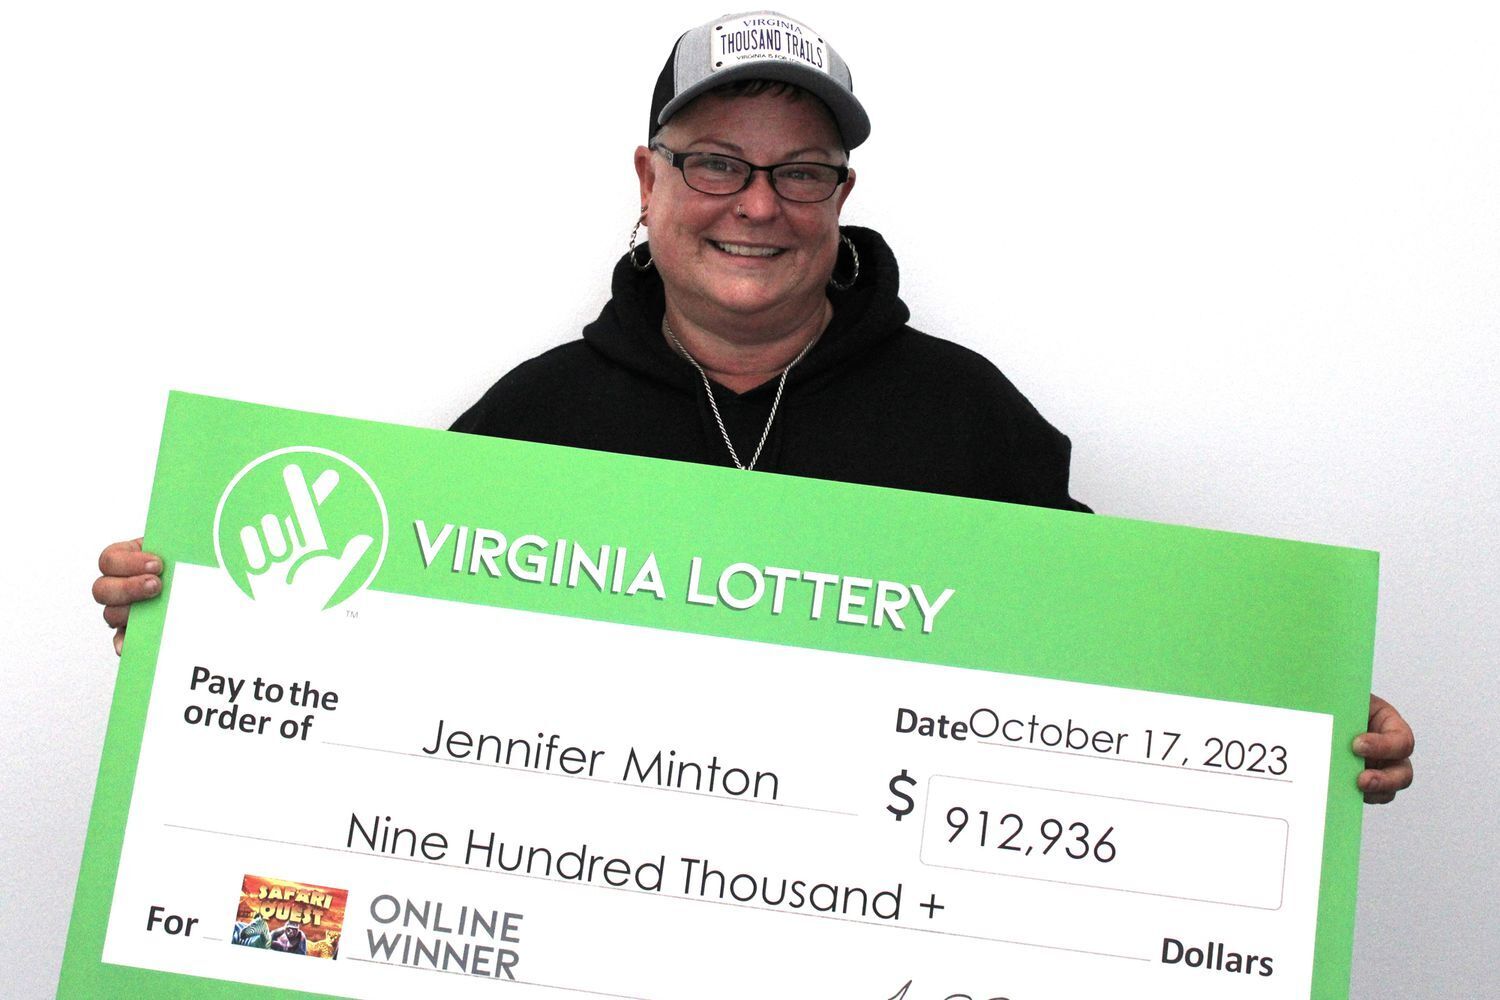 Американка выиграла в лотерею дважды за неделю: сначала 50 тысяч долларов, а затем – почти миллион. Фото счастливицы